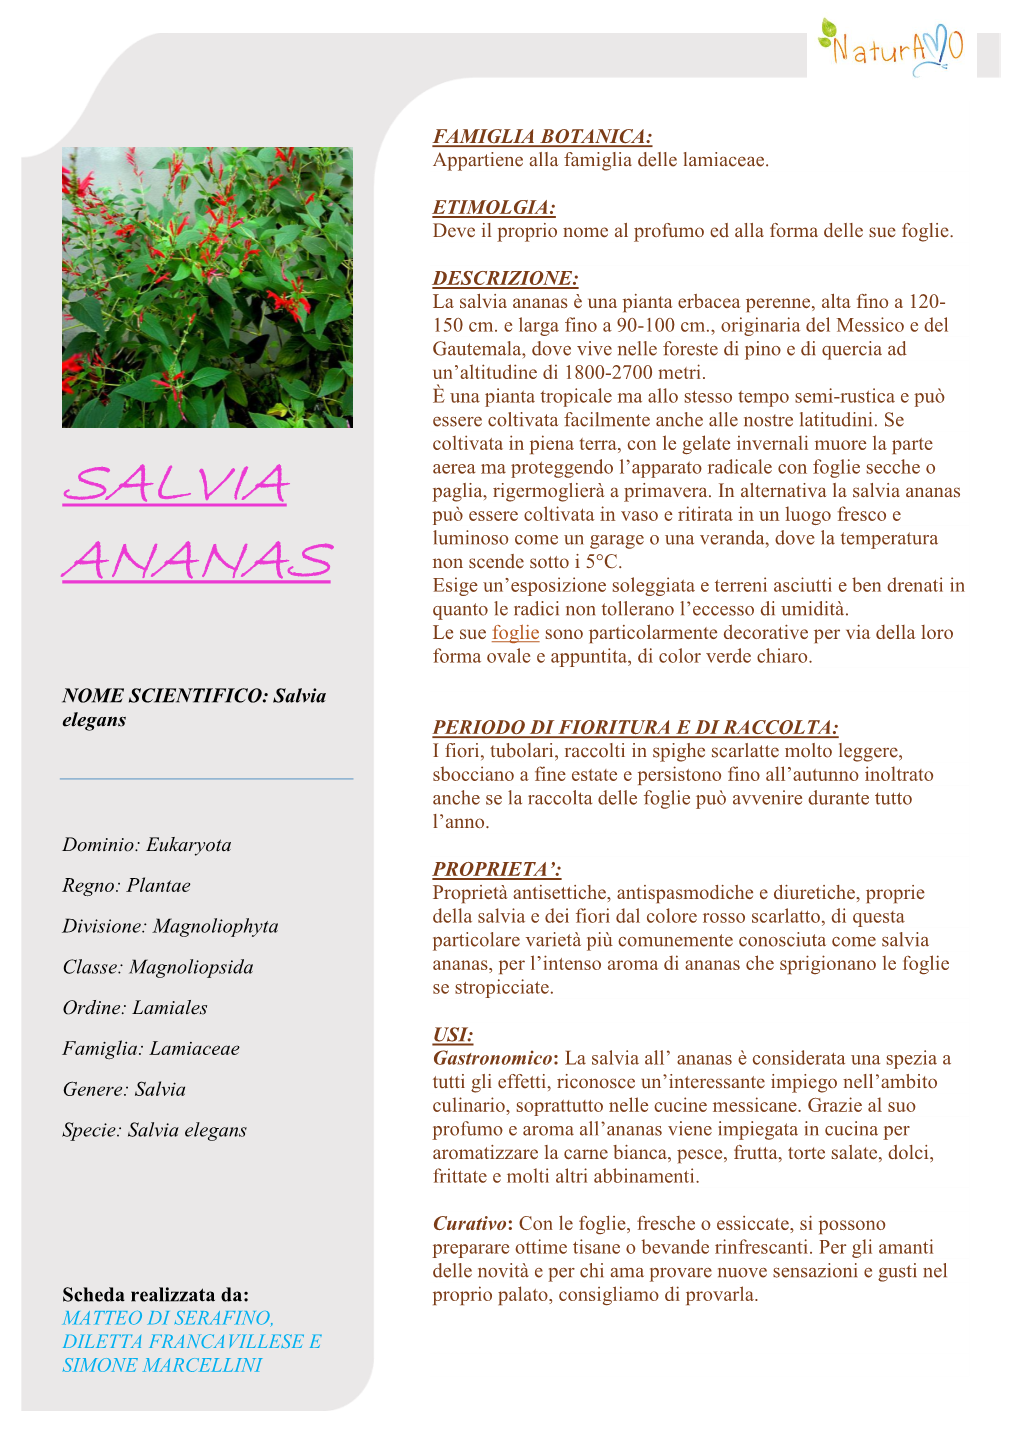 Salvia Ananas È Una Pianta Erbacea Perenne, Alta Fino a 120- 150 Cm